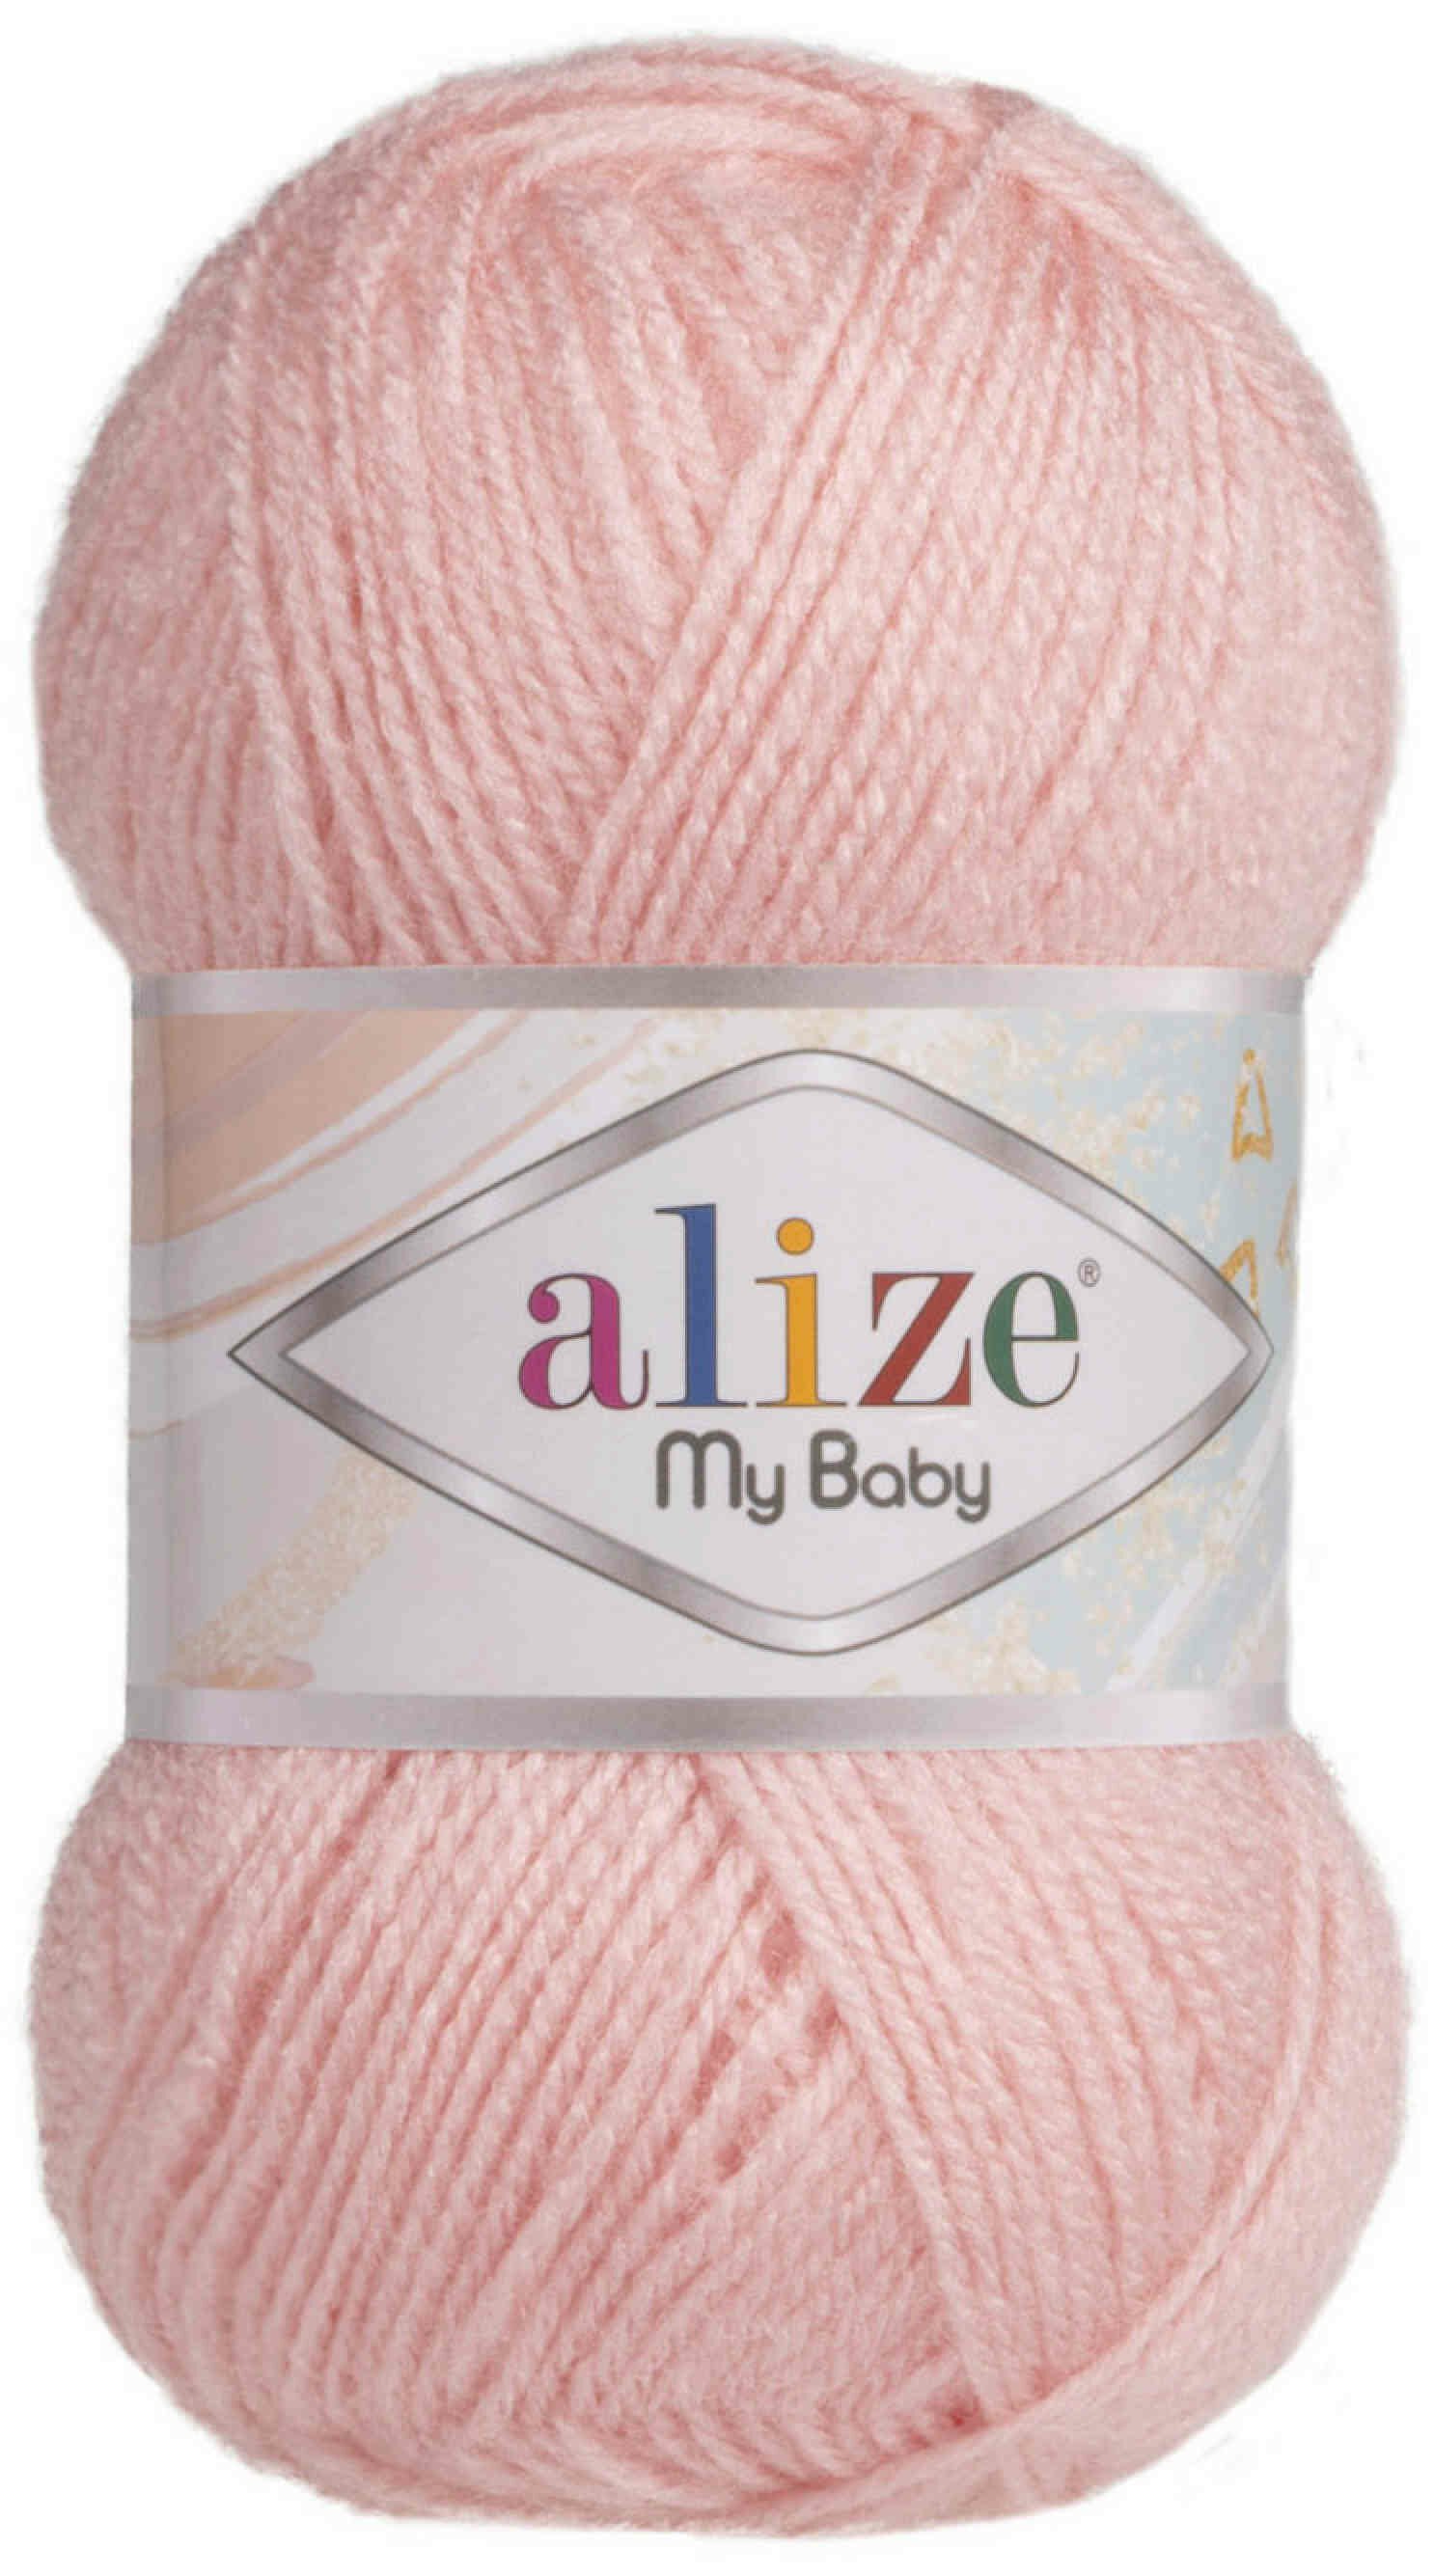 Пряжа Alize My baby розовая пудра (556), 100%акрил, 150м, 50г, 1шт